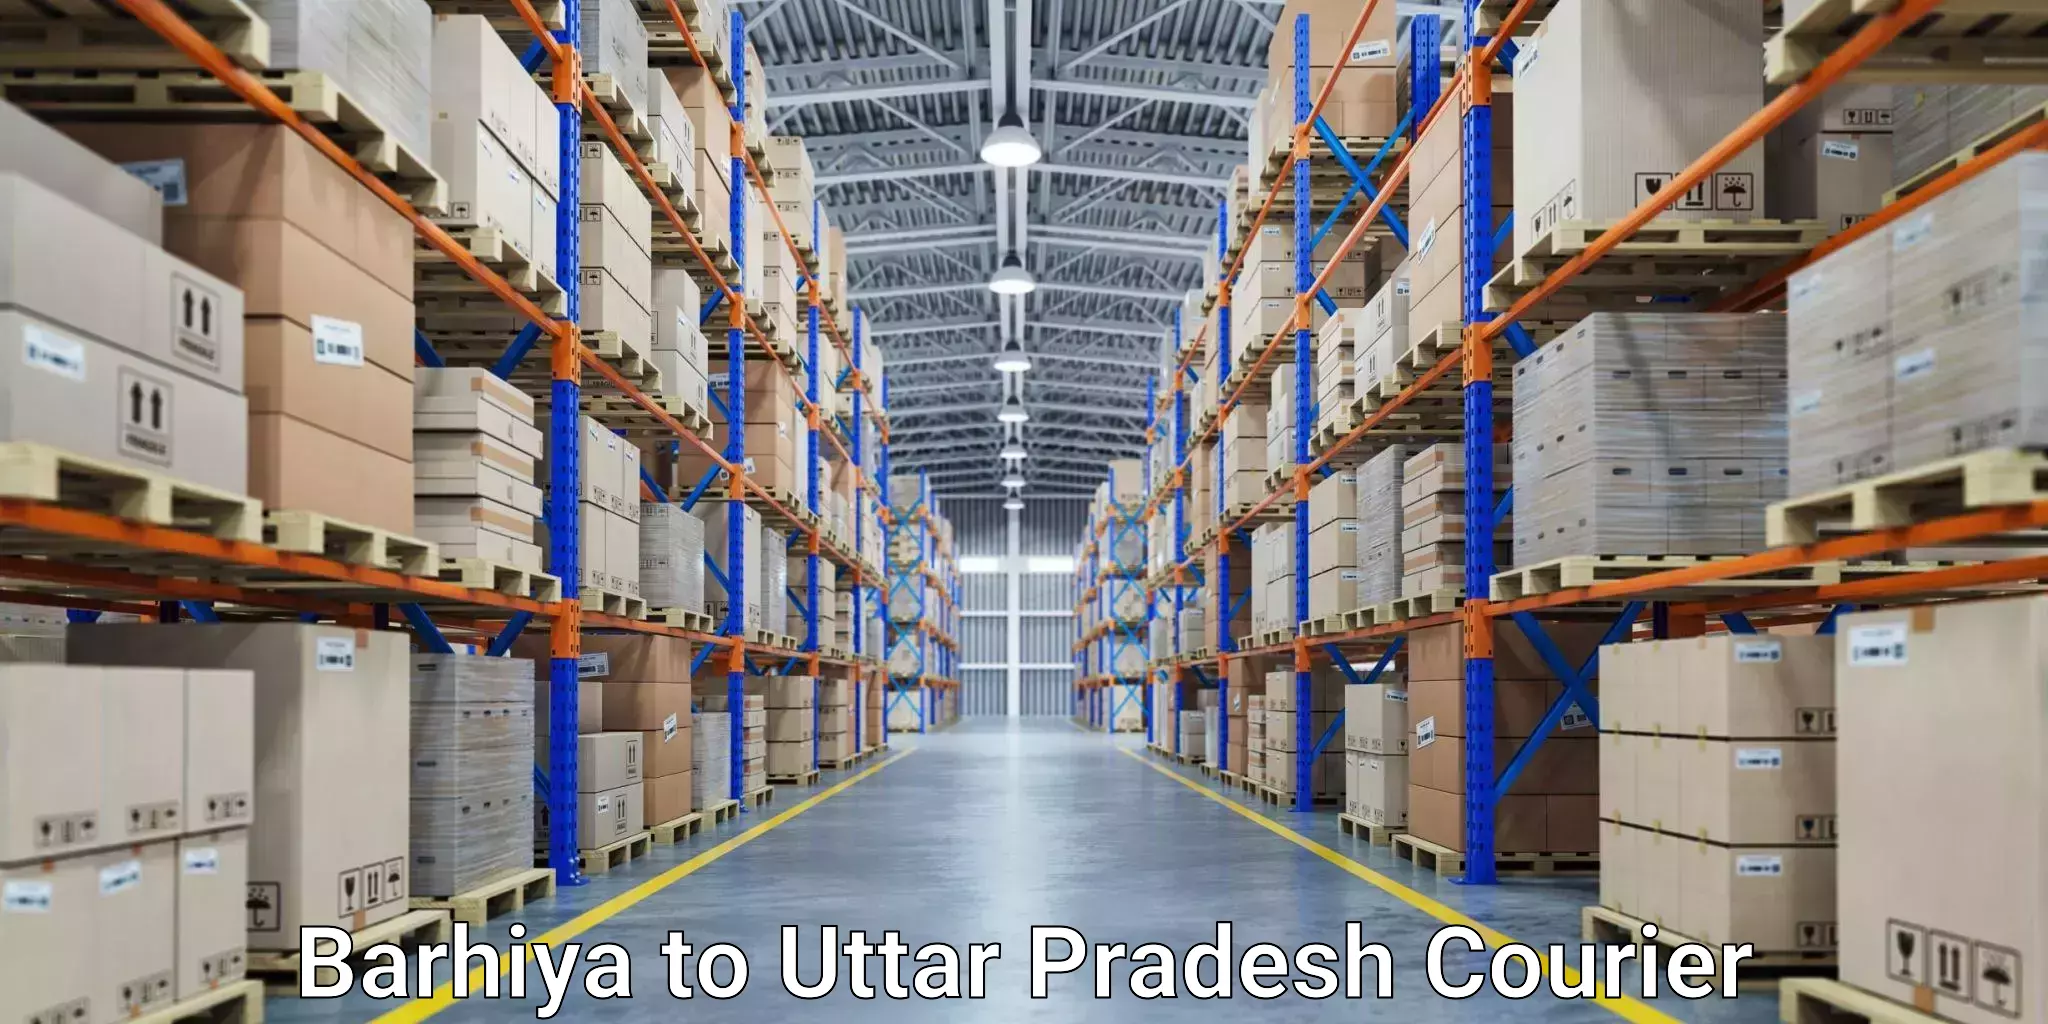 Reliable shipping solutions Barhiya to Mathura